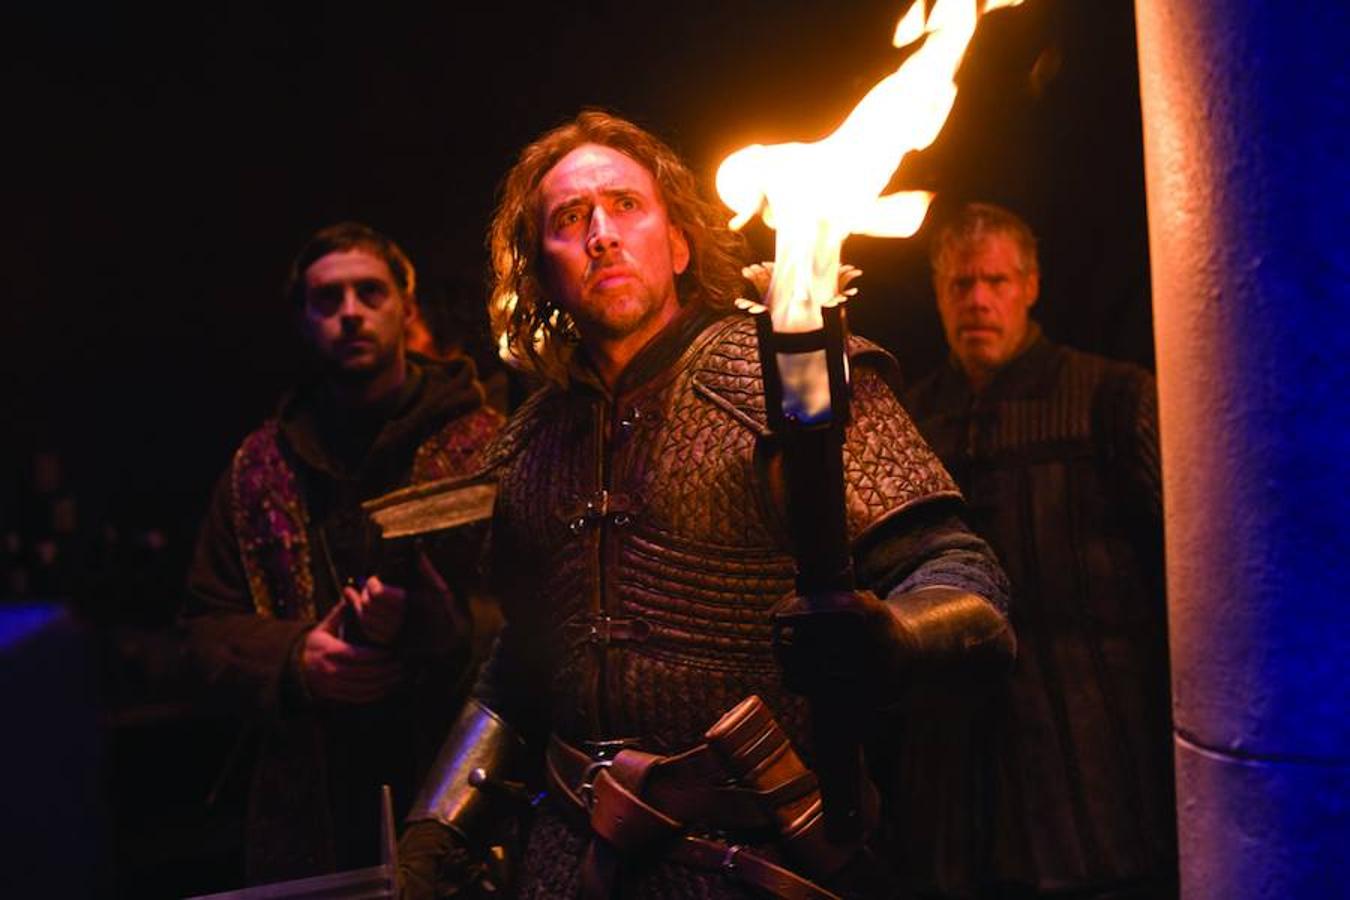 En tiempo de brujas (2011). A mediados del siglo XIV, Behman (Nicolas Cage), desertor de las Cruzadas, debe escoltar hasta un monasterio a una joven acusada de brujería. Allí les esperan las fuerzas de la oscuridad.